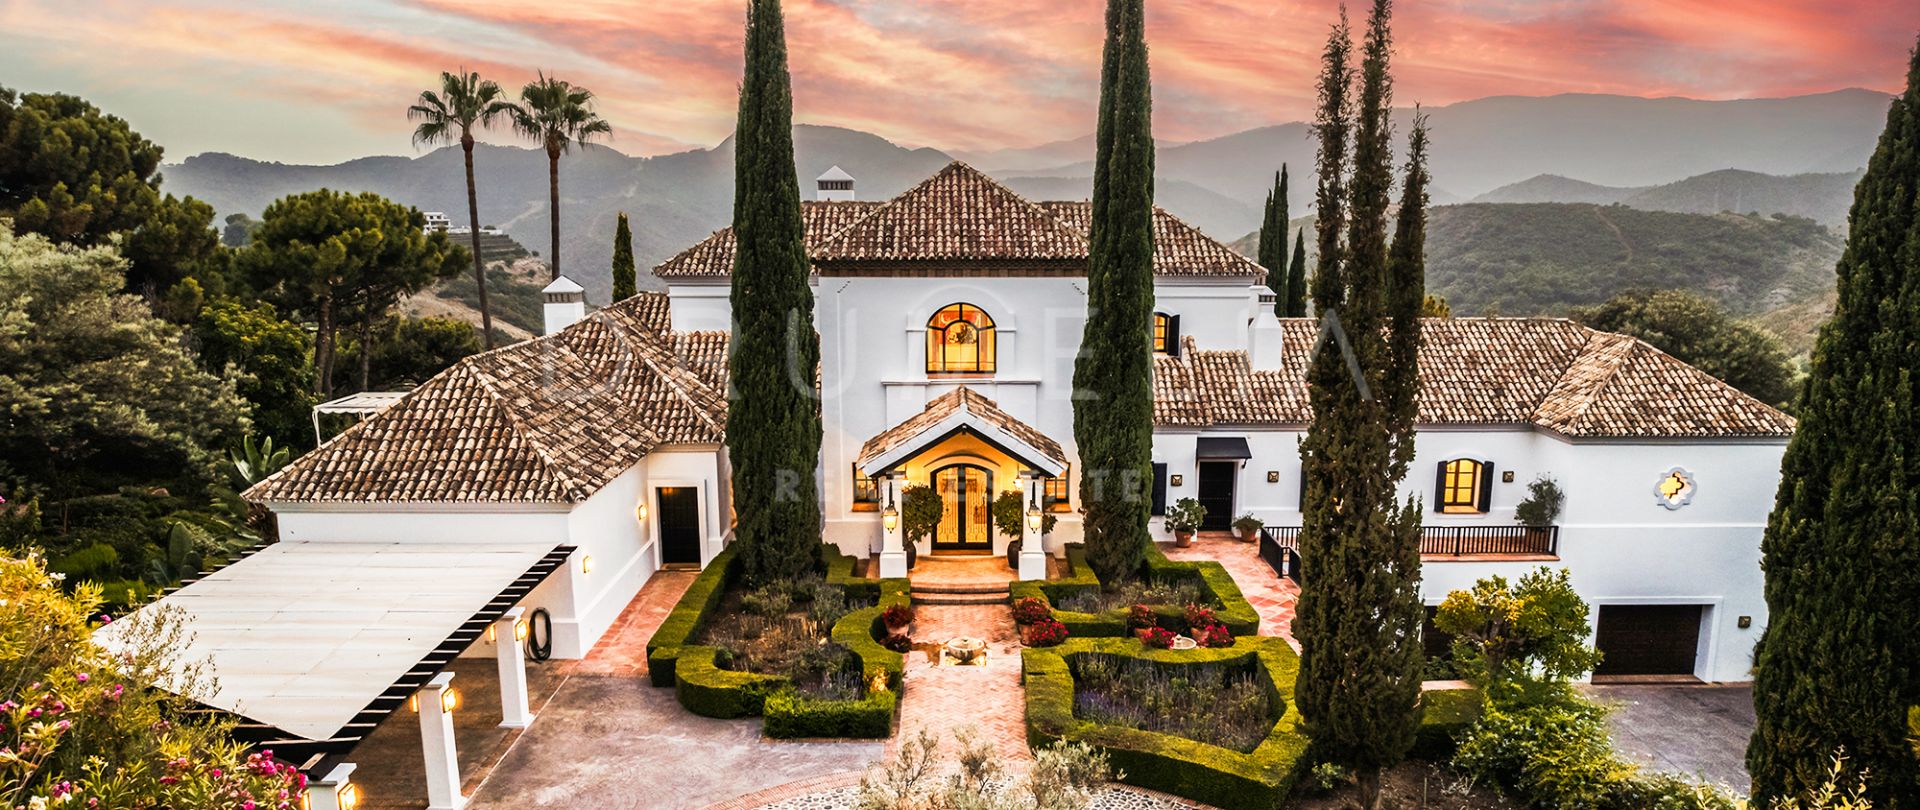 Casa Terregles - eksklusivt herskapshus med andalusisk sjarm, panoramautsikt og luksuriøse fasiliteter i La Zagaleta, Benahavis